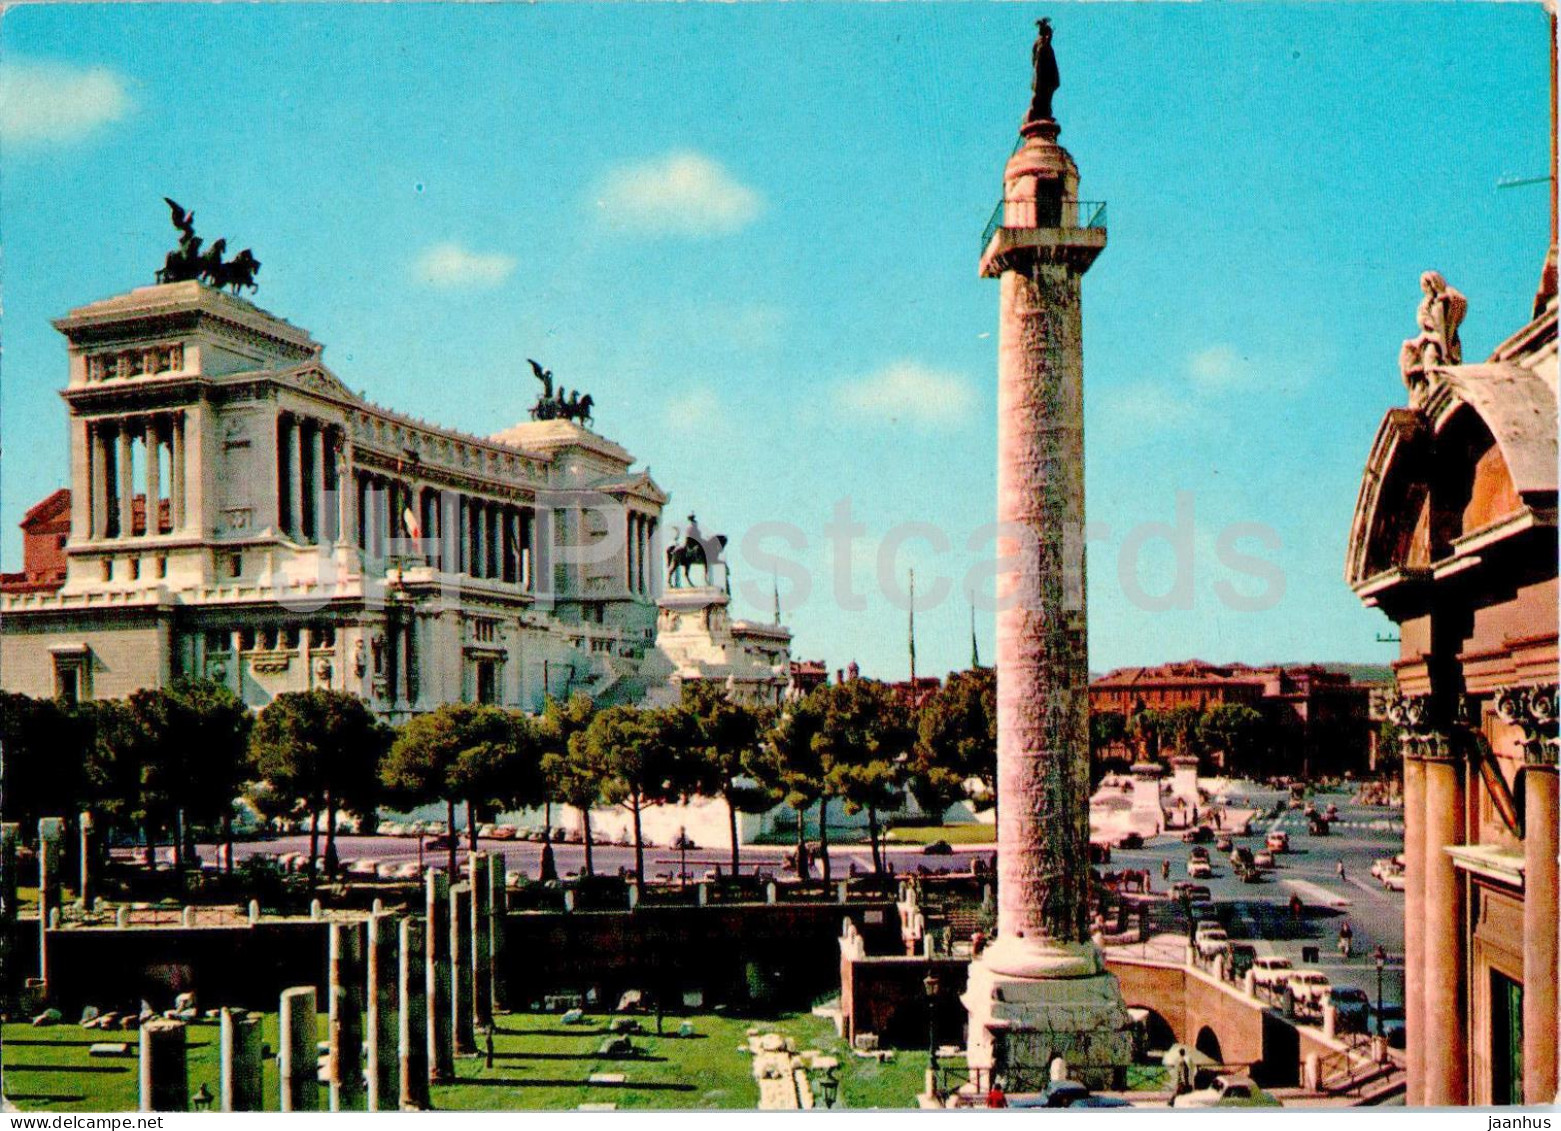 Roma - Rome - Altare Della Patria - Altar Of The Nation - 233 - 1989 - Italy - Used - Altare Della Patria